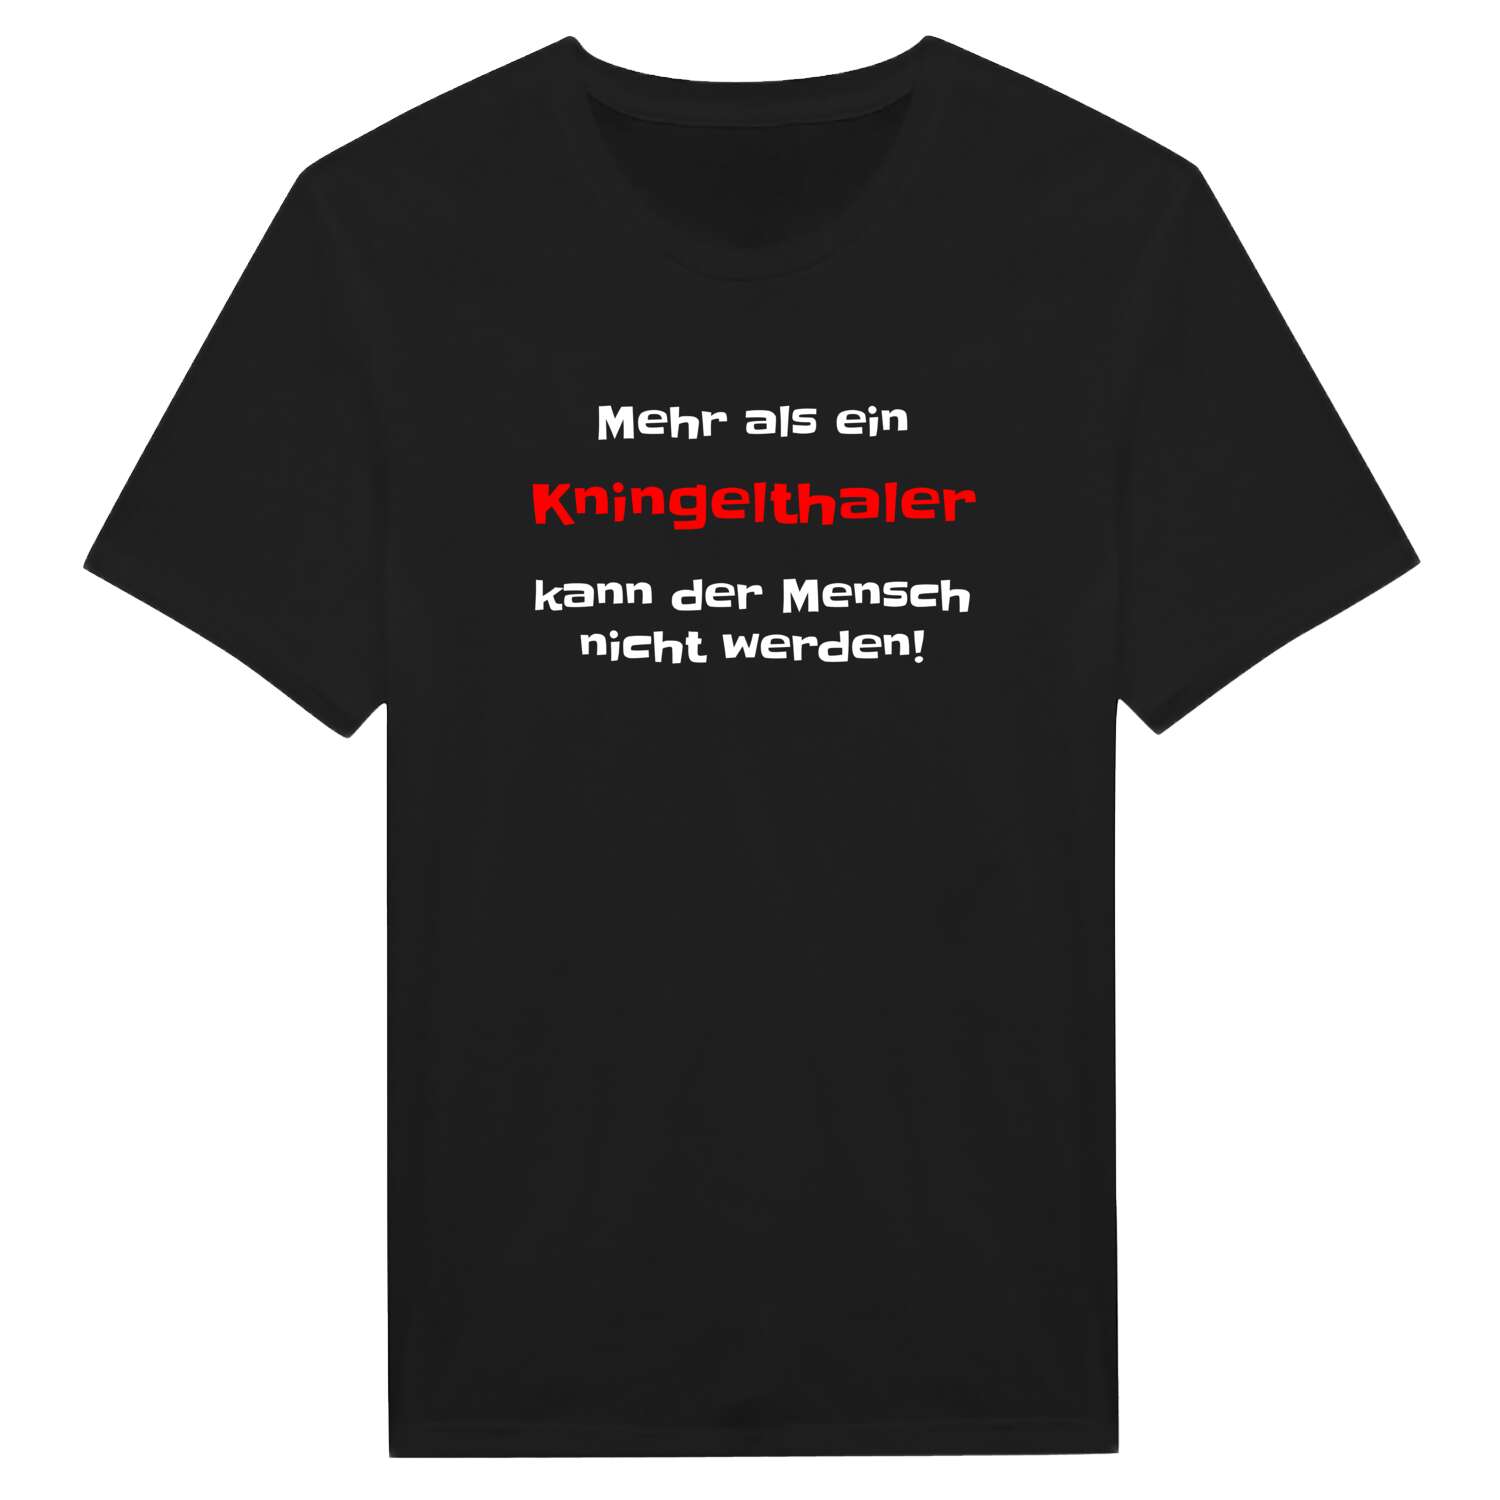 Kningelthal T-Shirt »Mehr als ein«